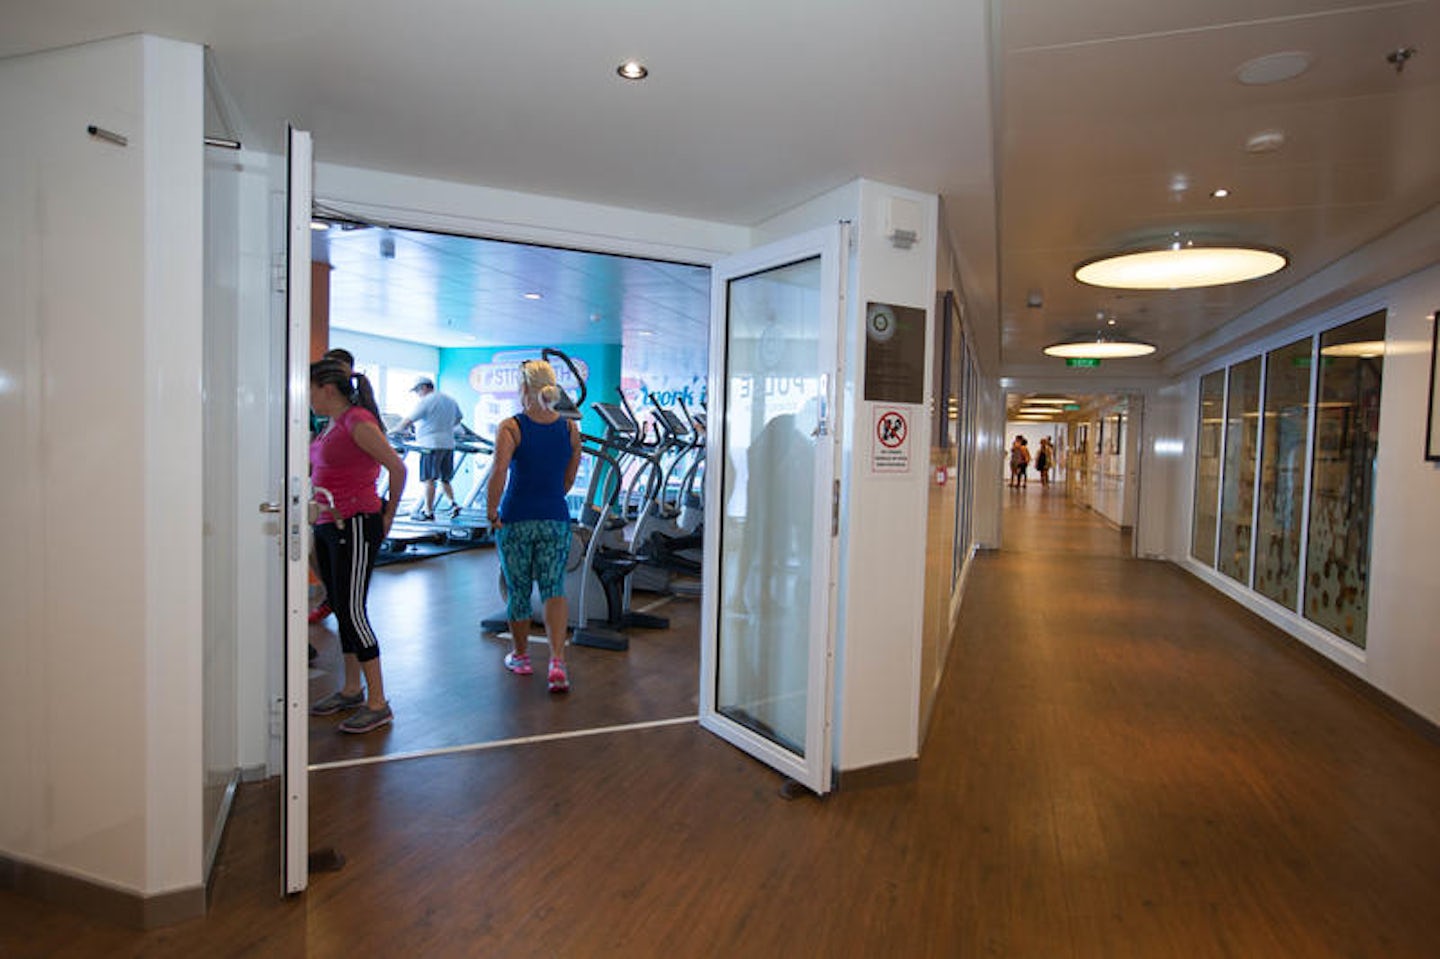 Pulse Fitness Center on Norwegian Getaway